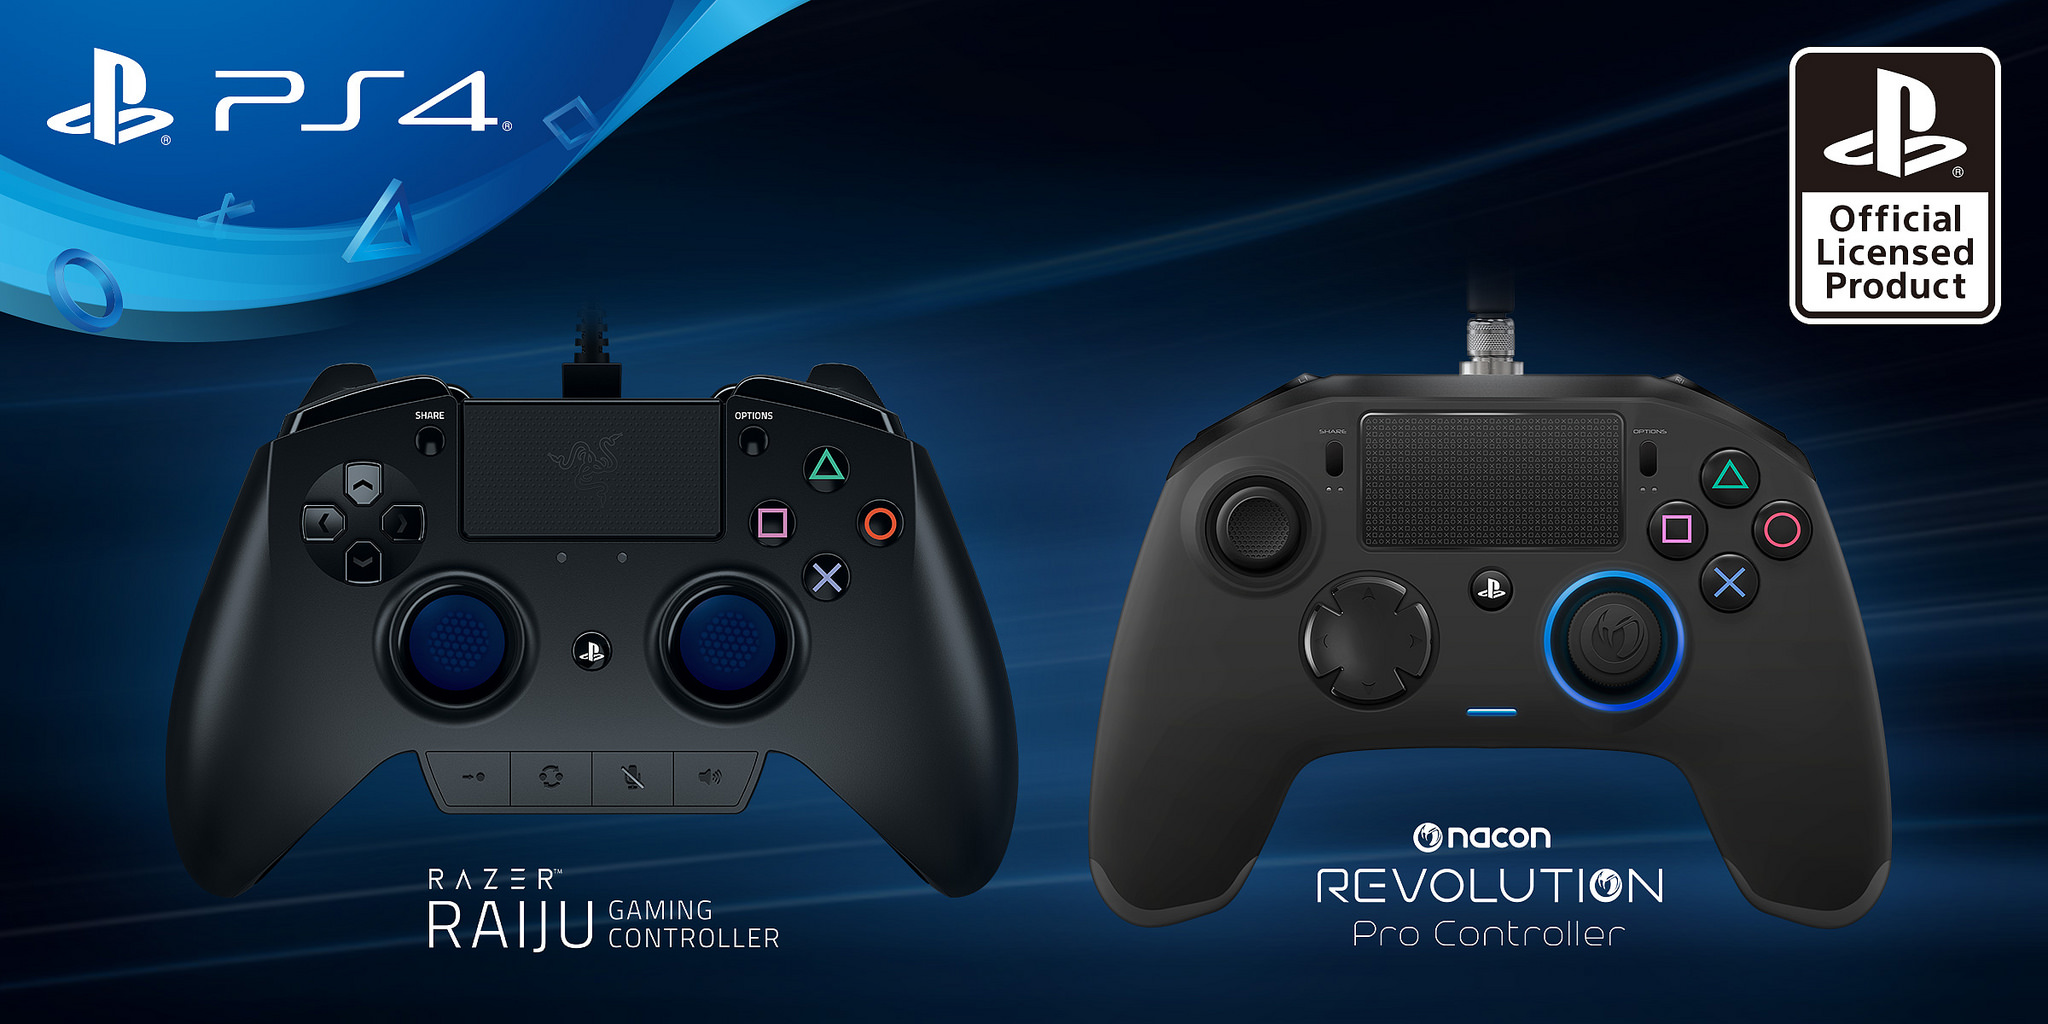 Annunciati due nuovi controller “Pro” per PlayStation